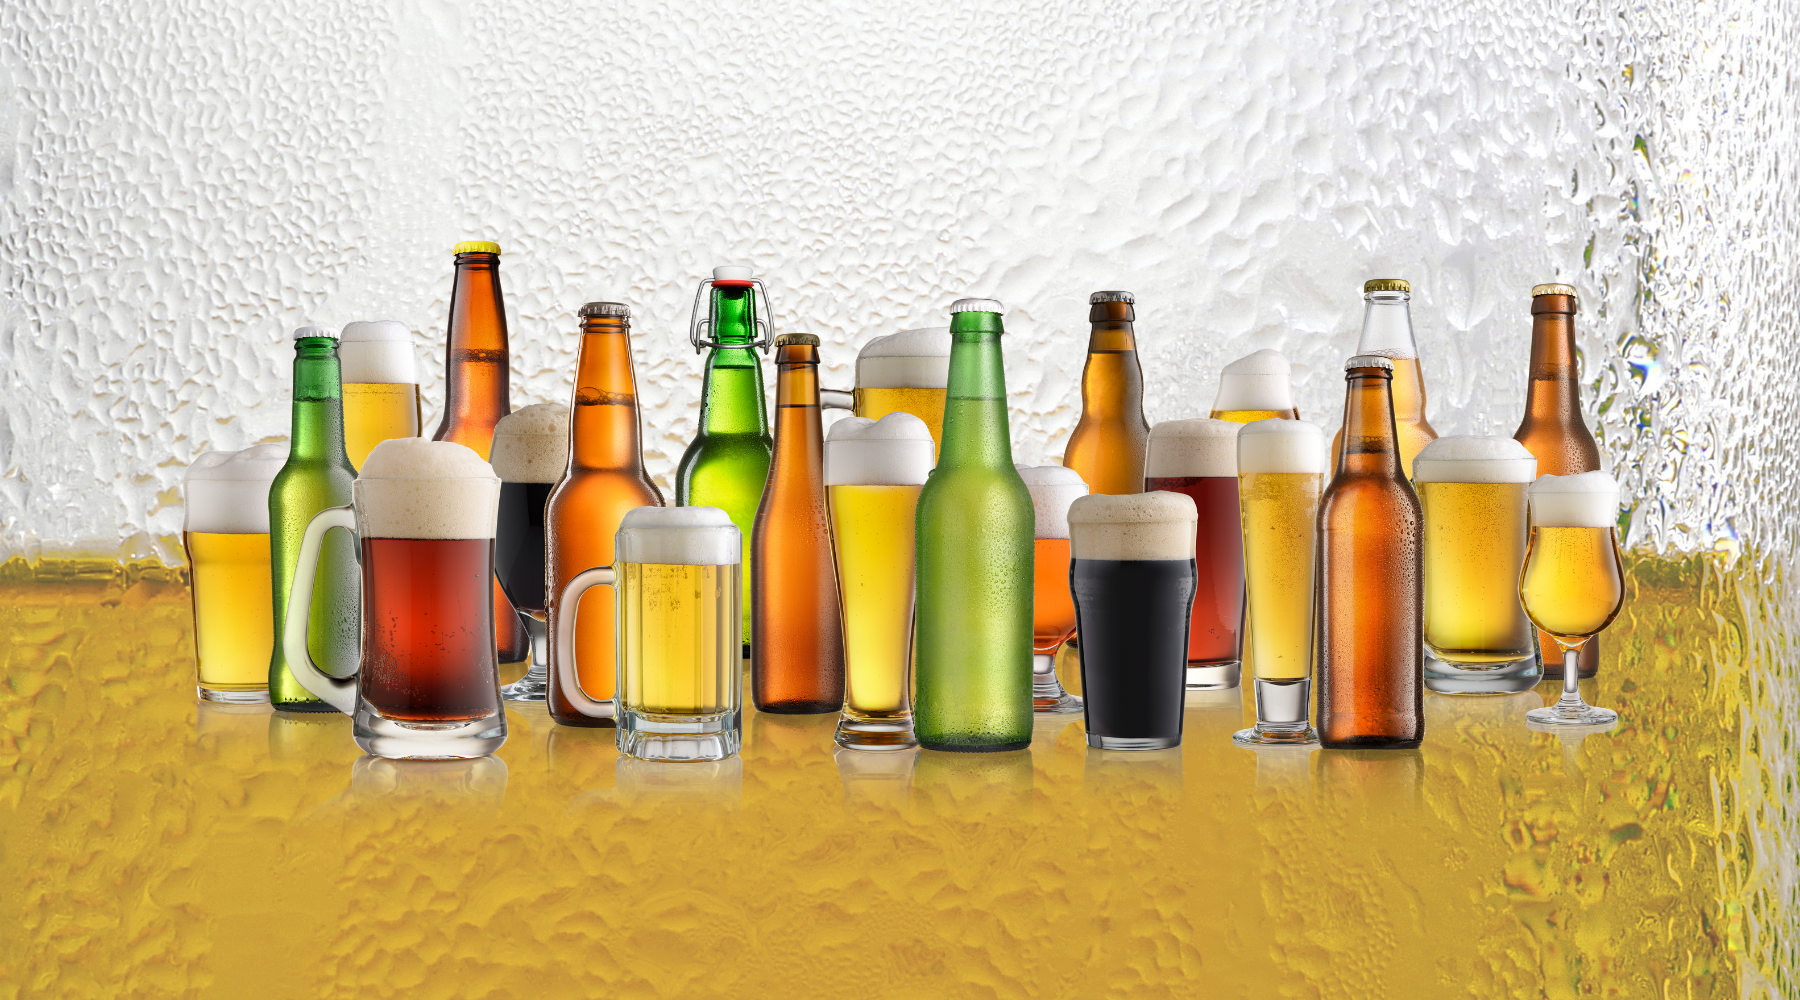 Boutique en ligne de bières et verres à bières - Spécialiste de bières